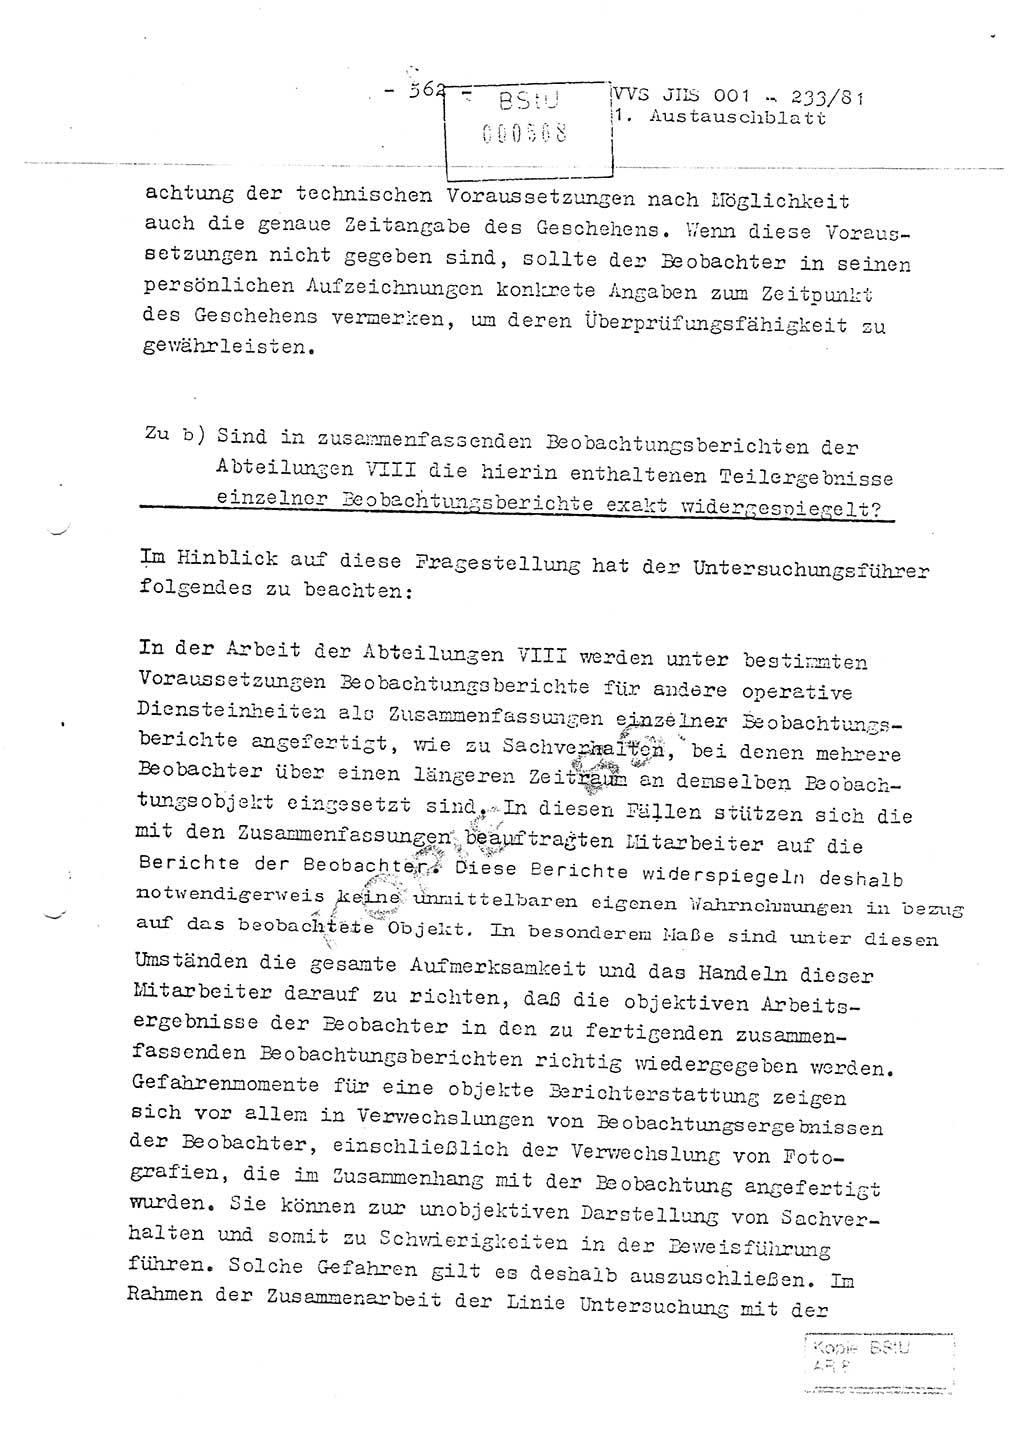 Dissertation Oberstleutnant Horst Zank (JHS), Oberstleutnant Dr. Karl-Heinz Knoblauch (JHS), Oberstleutnant Gustav-Adolf Kowalewski (HA Ⅸ), Oberstleutnant Wolfgang Plötner (HA Ⅸ), Ministerium für Staatssicherheit (MfS) [Deutsche Demokratische Republik (DDR)], Juristische Hochschule (JHS), Vertrauliche Verschlußsache (VVS) o001-233/81, Potsdam 1981, Blatt 562 (Diss. MfS DDR JHS VVS o001-233/81 1981, Bl. 562)